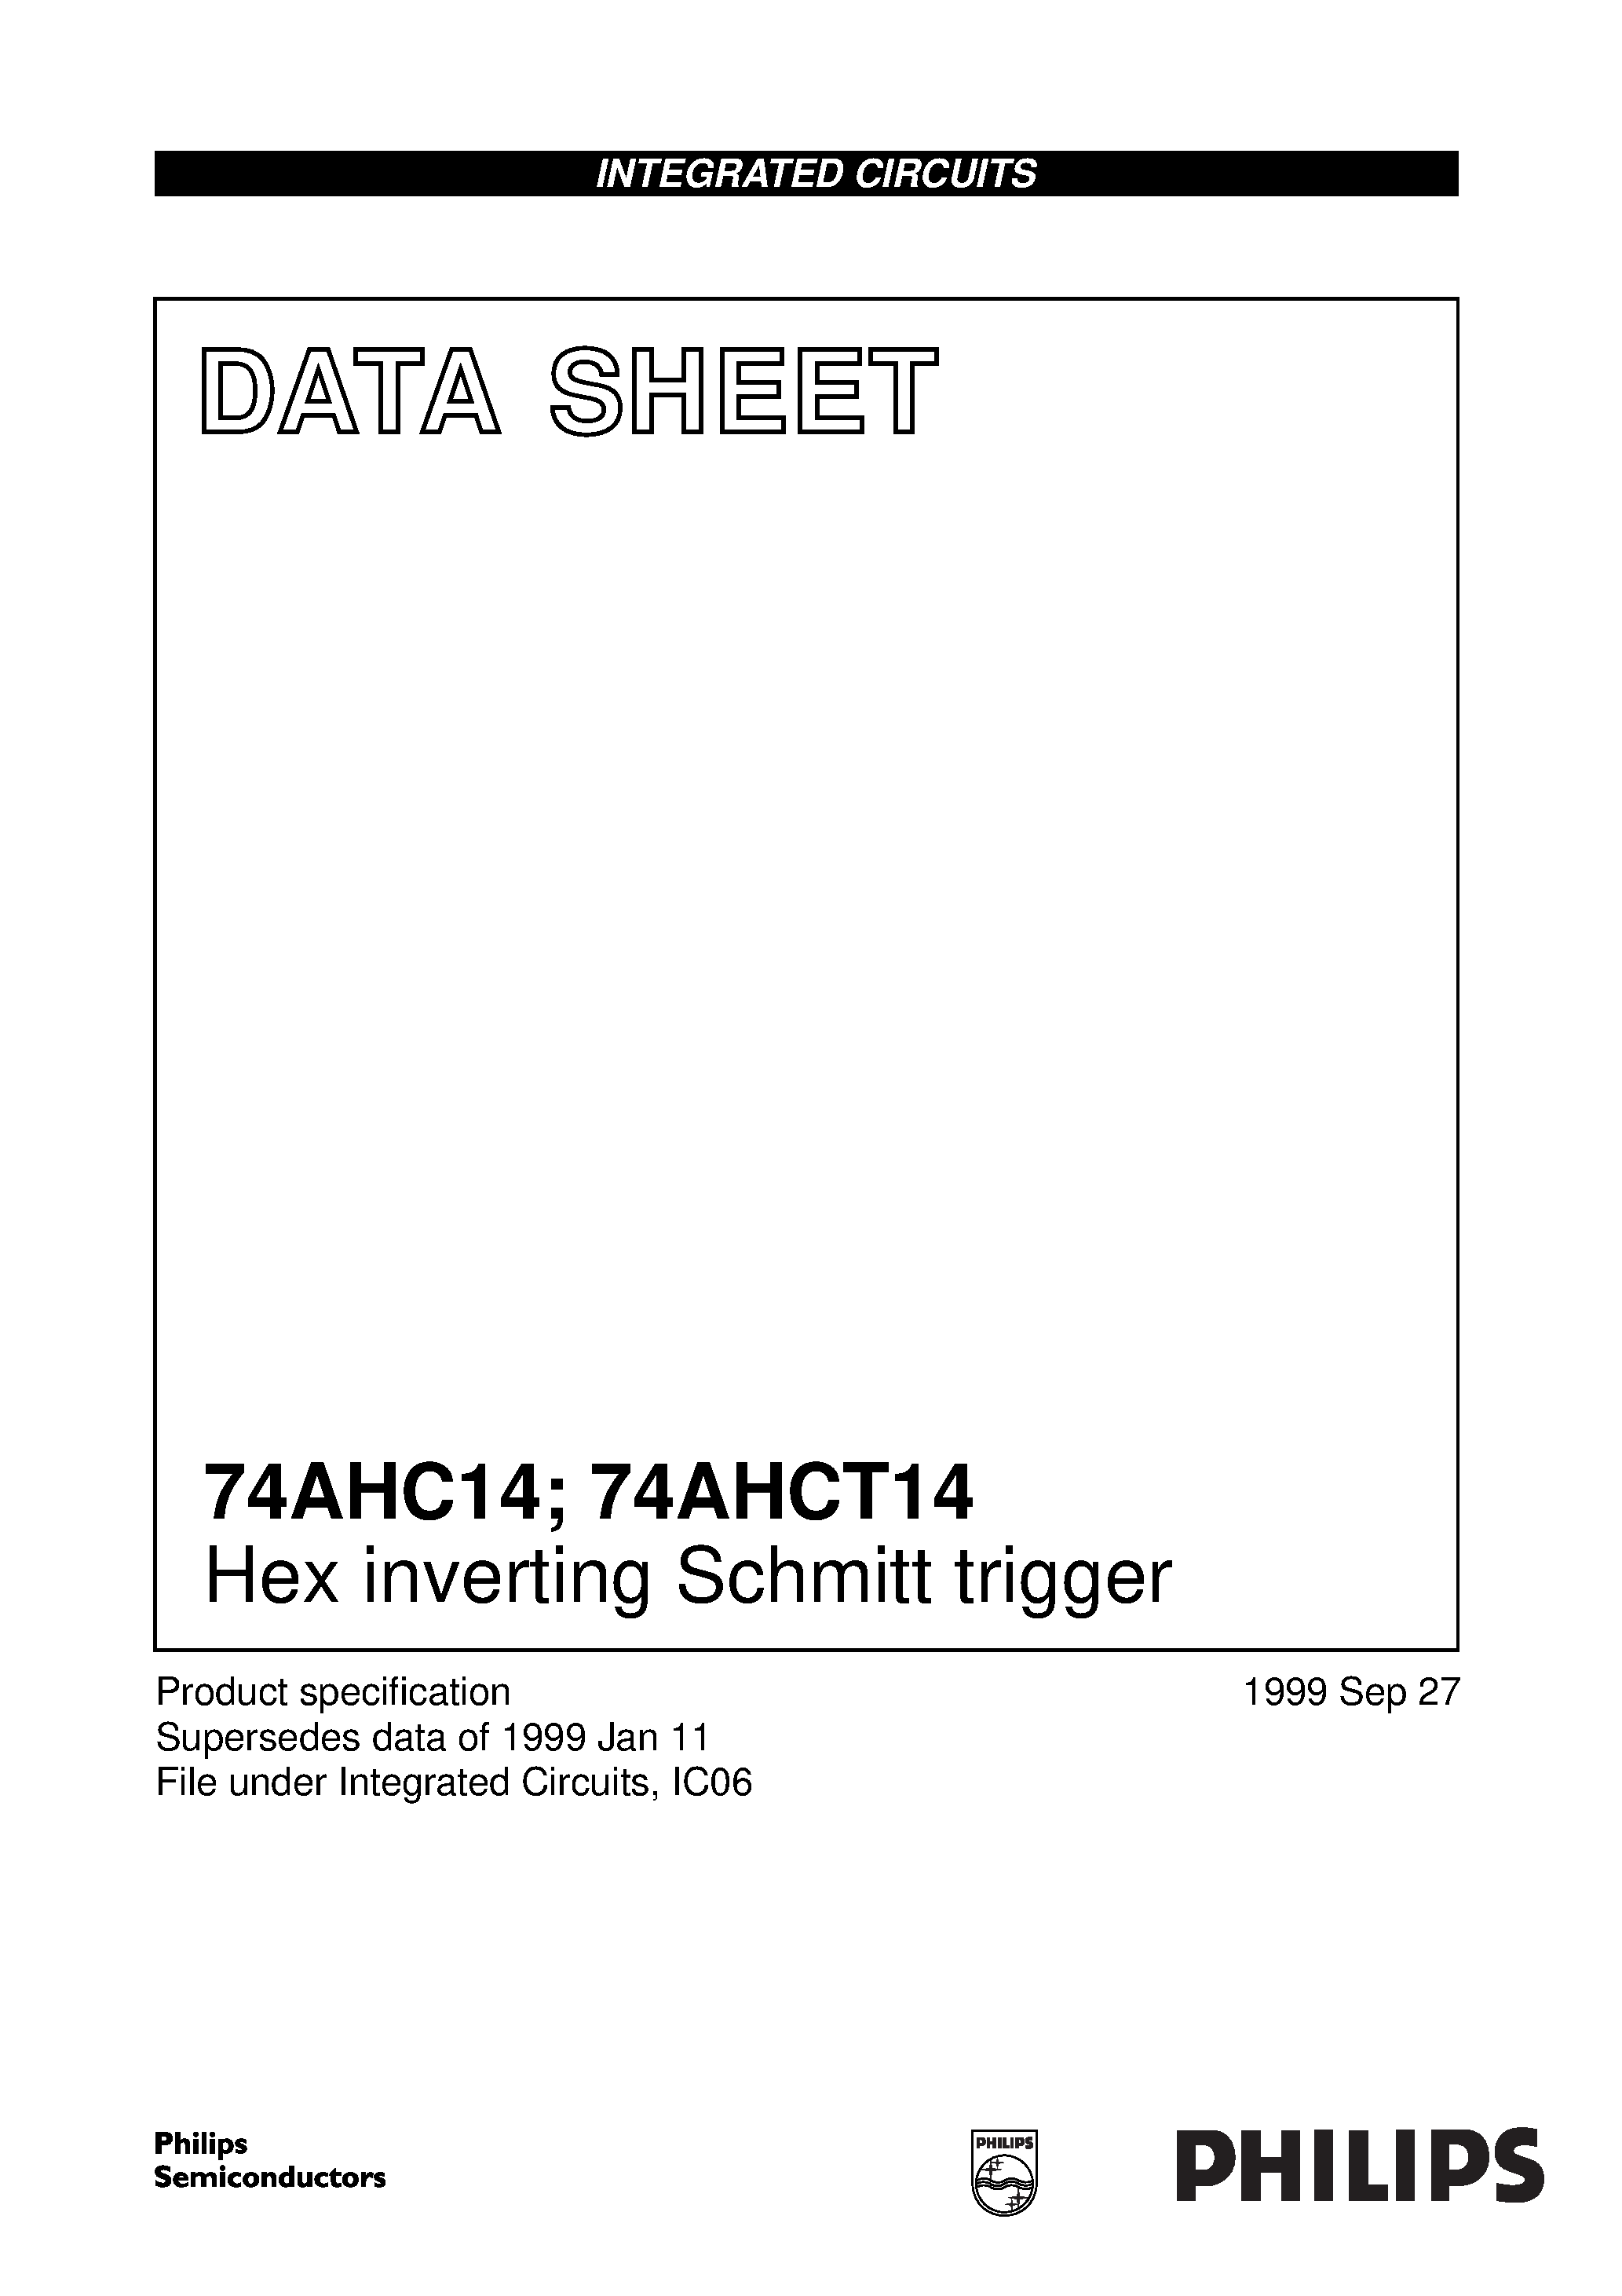 Даташит 74AHC14D - Hex inverting Schmitt trigger страница 1